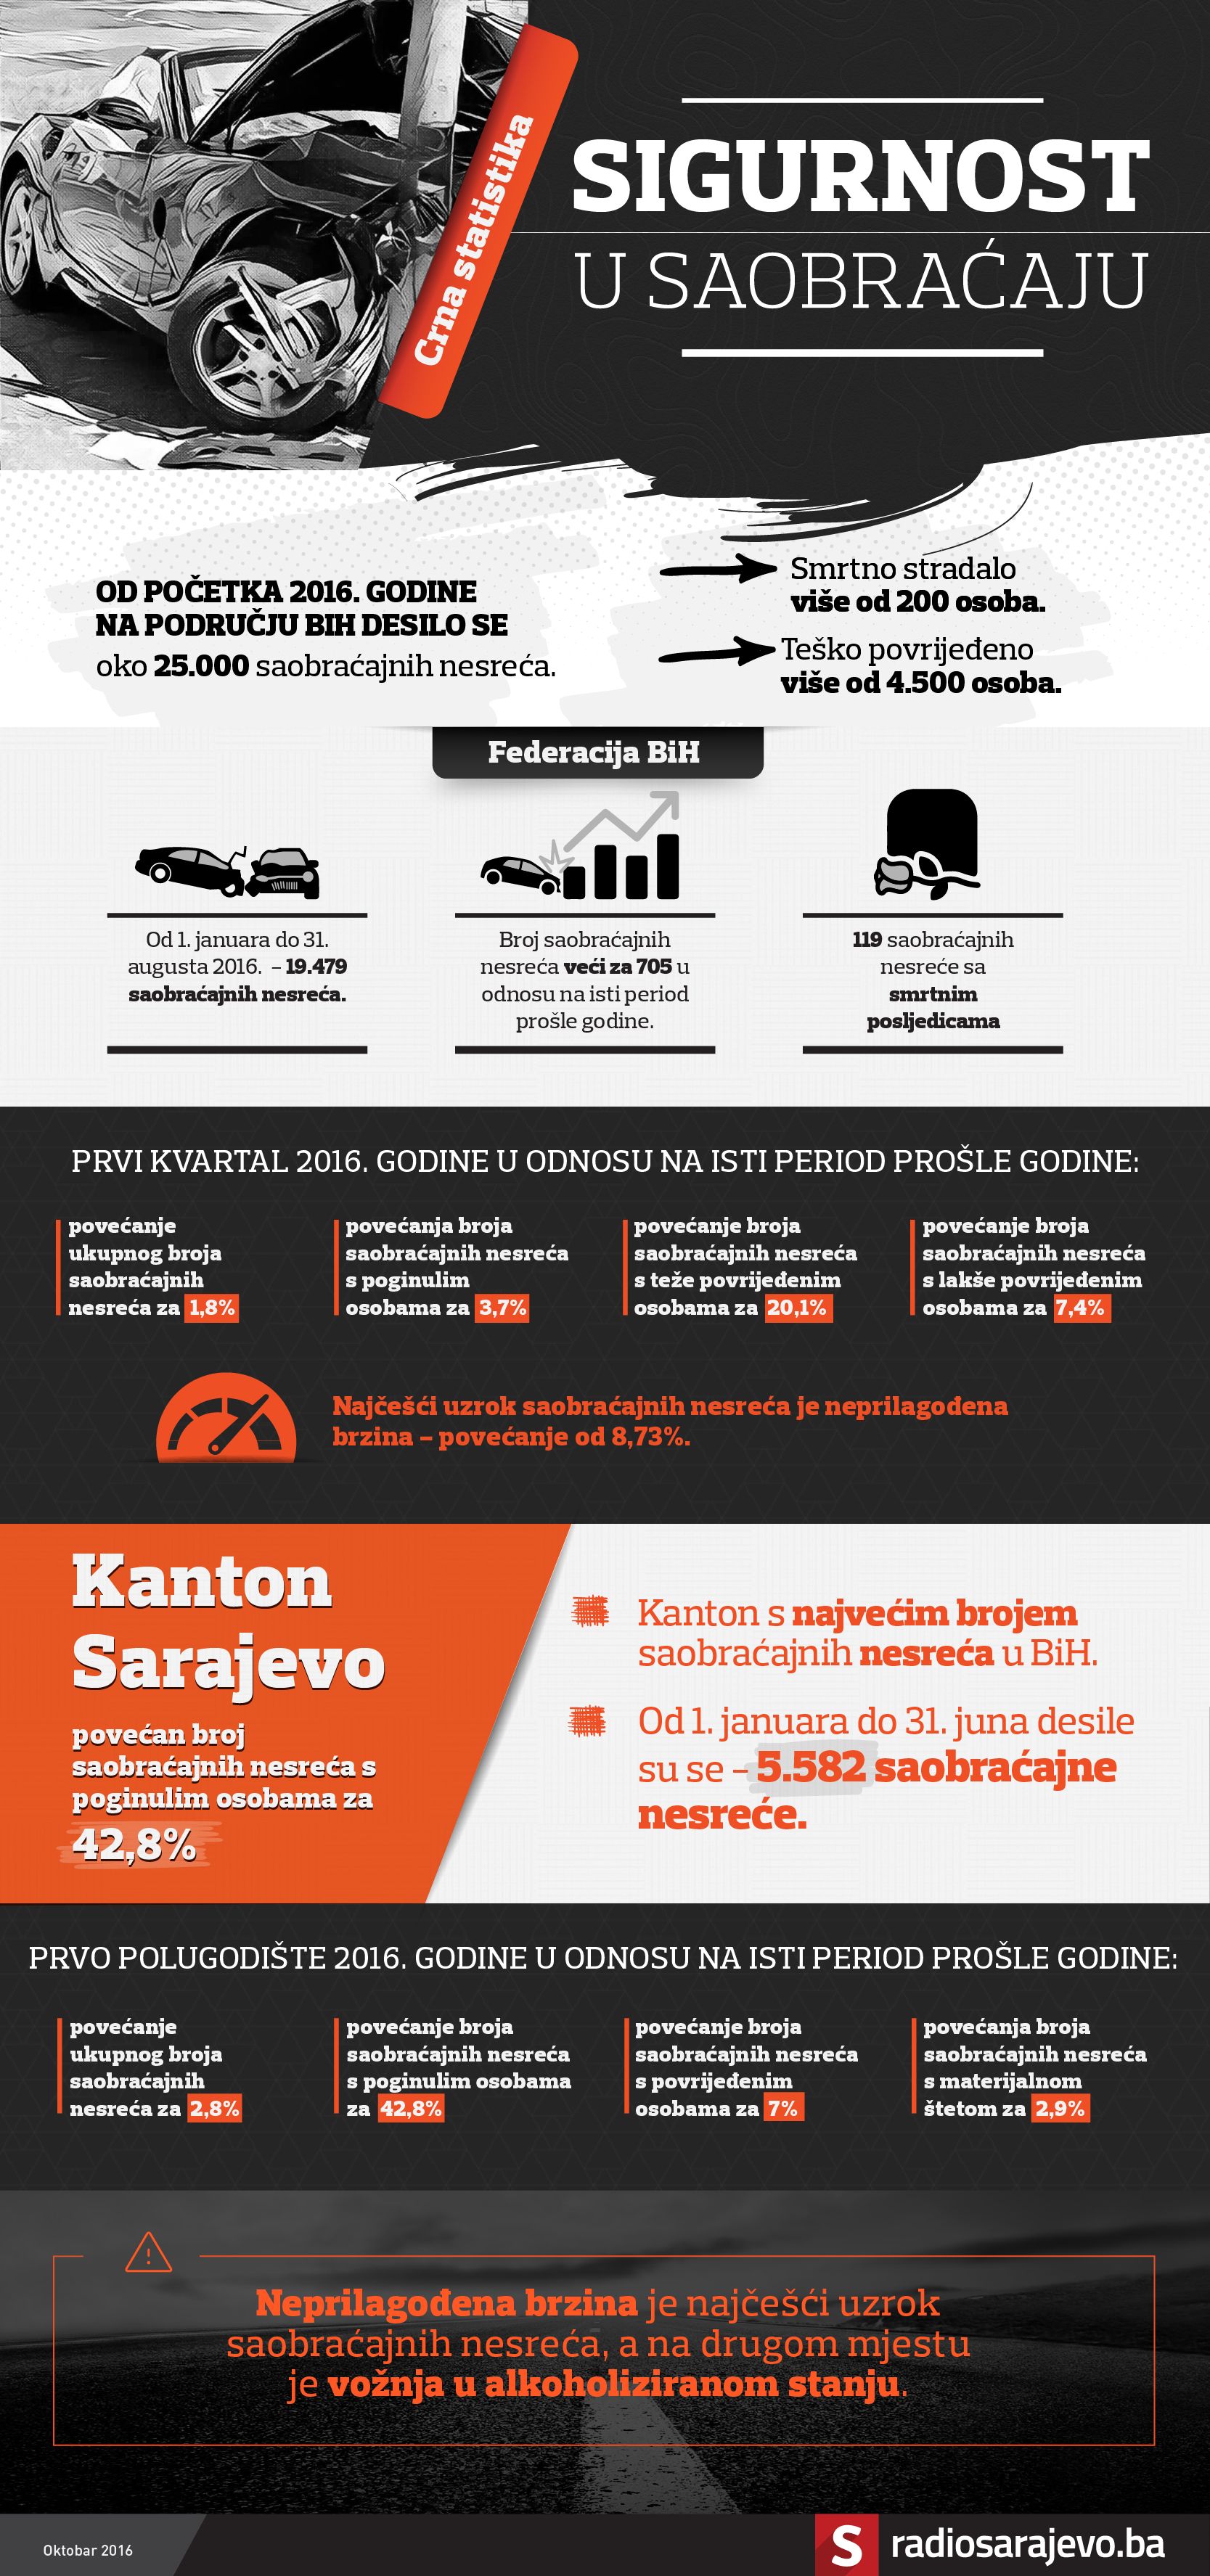 Infografika_sigurnost_saobracaj.jpg - Infografika: Koliko su građani BiH sigurni u saobraćaju